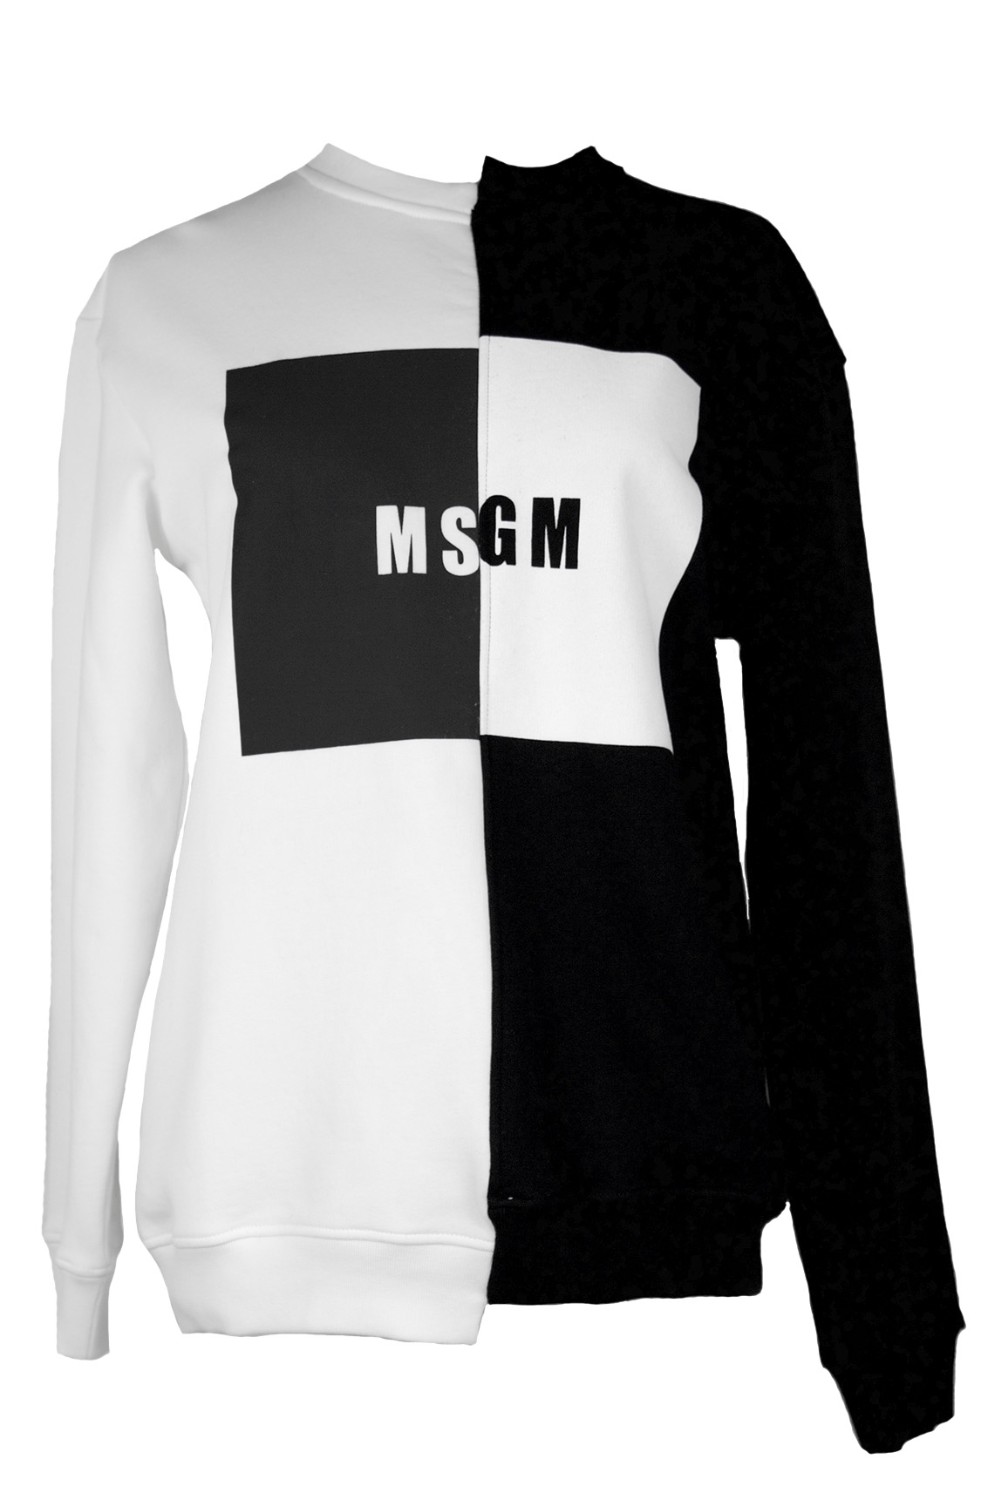 shop MSGM Saldi Felpe: Felpa MSGM in due toni, black and white, logo sul davanti, in cotone, girocollo.

Composizione: 100% cotone number 811